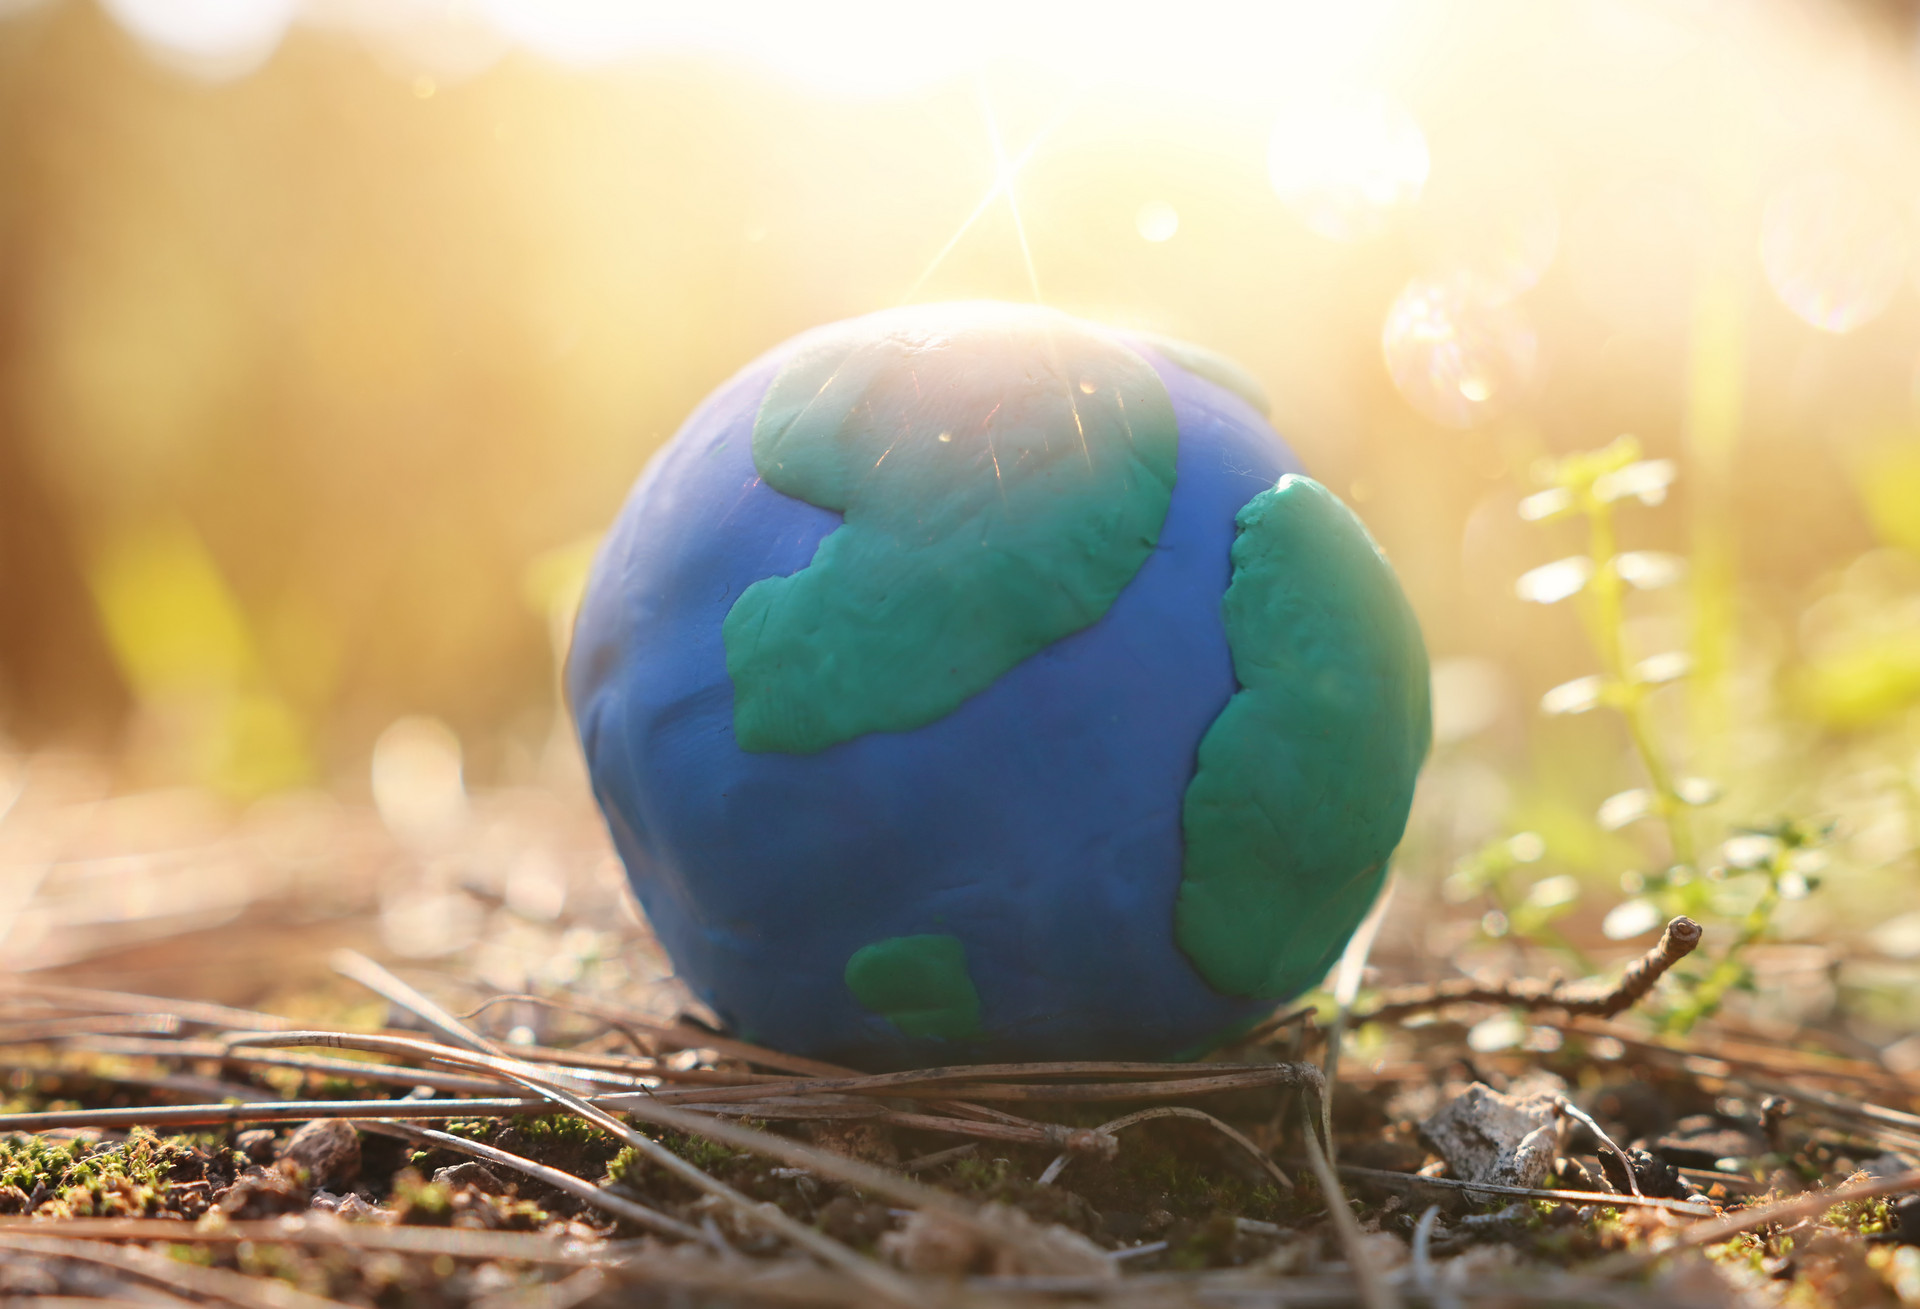 Modell der Erde aus Knete liegt auf dem Boden im Freien.